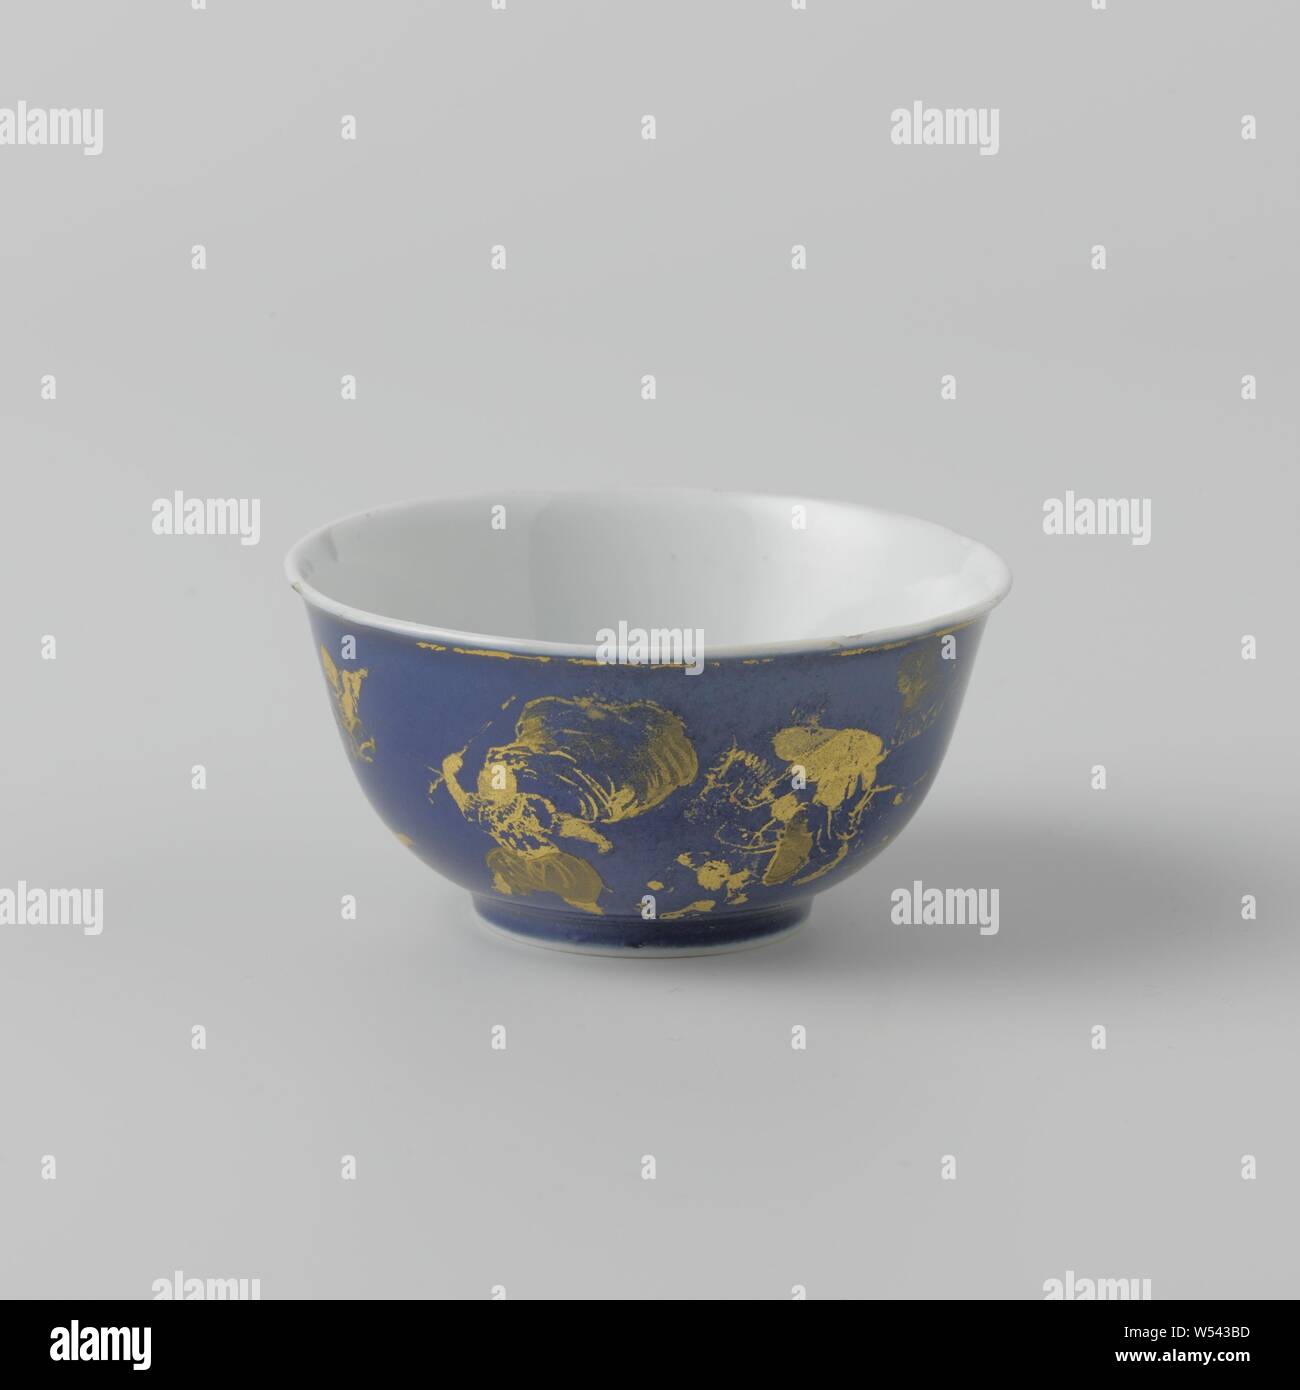 Coupe en forme de cloche avec bleu poudre, figures, des rochers et des arbres, en forme de cloche, tasse de porcelaine peinte en bleu et or. sous glaçure, anonyme, la Chine, l'c. 1700 - c. 1724, Qing Dynasty, Kangxi (1644-1912) / (1662-1722) Période / Yongzheng-période (1723-1735), Porcelaine, glaçure (matériel), le cobalt (minéral), de l'or (métal), la vitrification, H 4,4 cm d 9,8 cm d 4,1 cm Banque D'Images